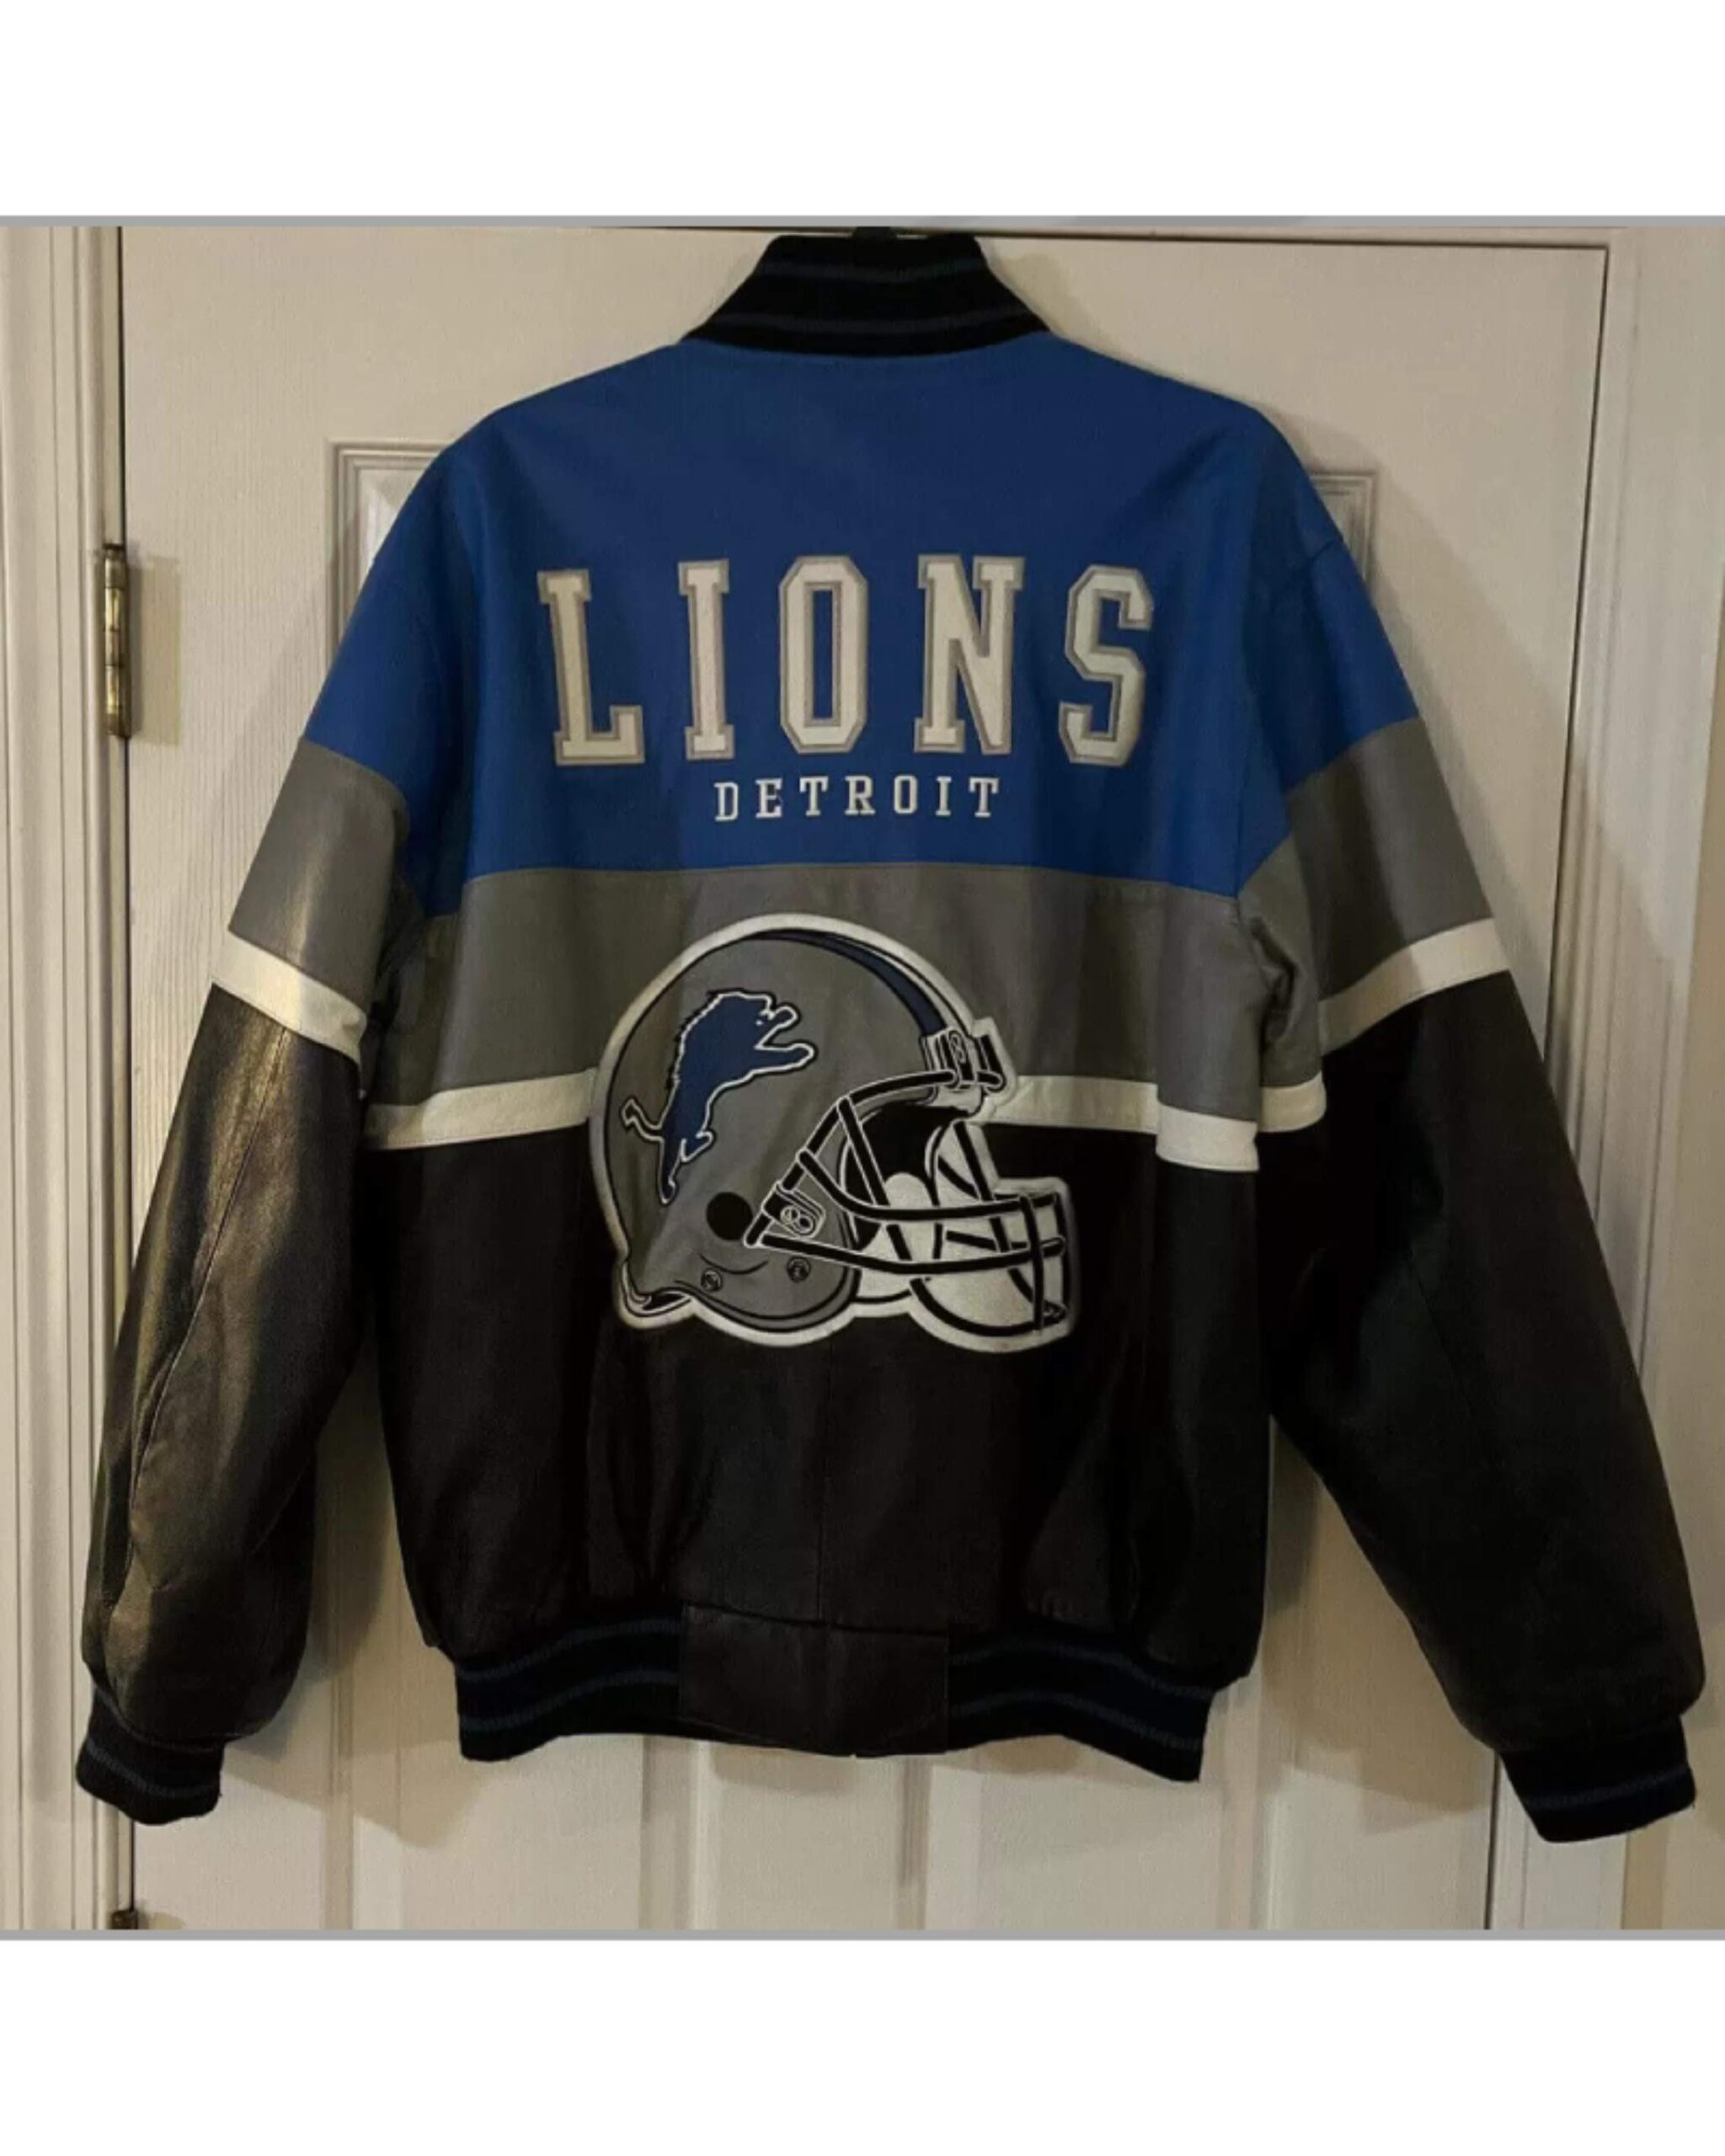 vintage detroit lions jacket